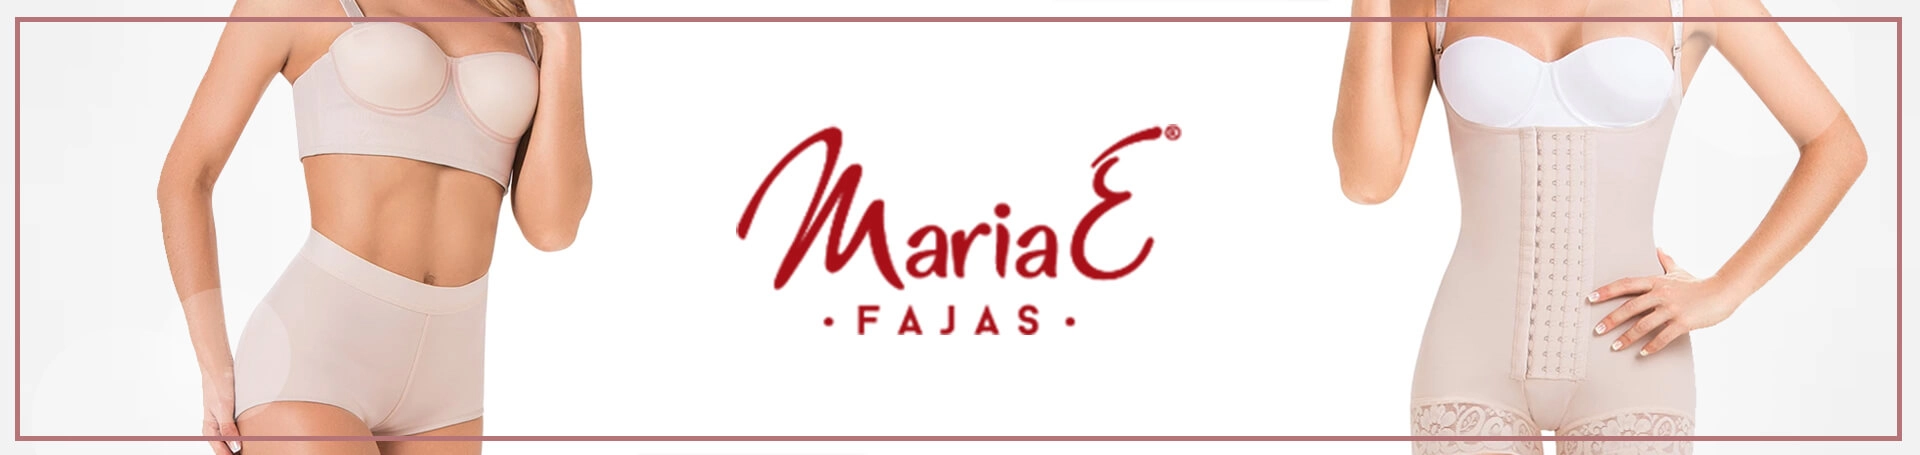 Fajas MariaE FQ102, Post Op Shapewear for Women